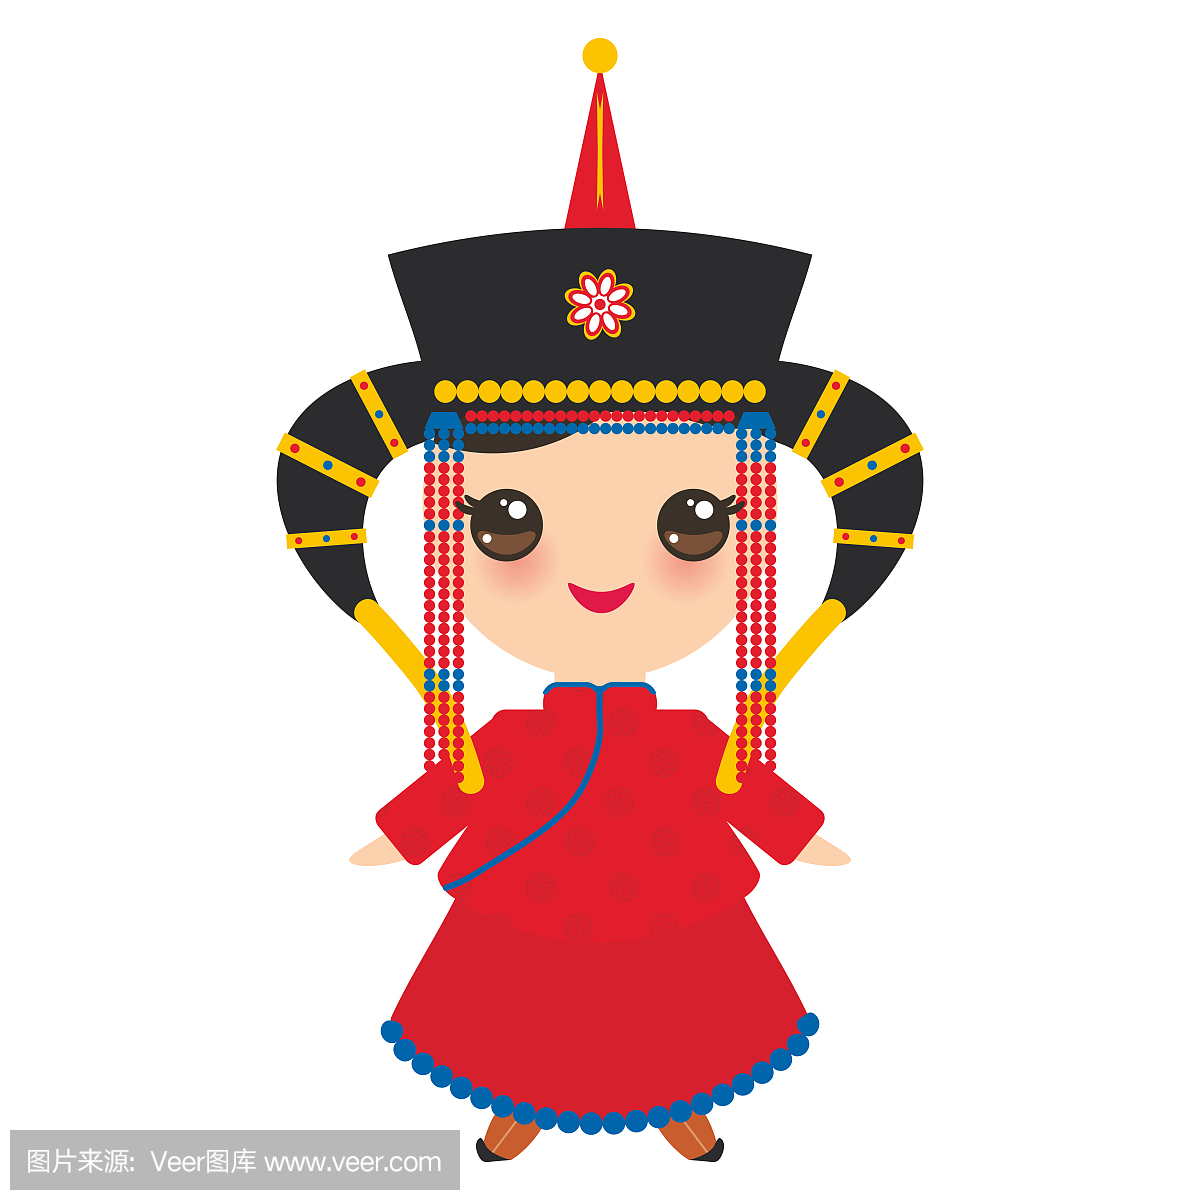 红色的民族服装和帽子的蒙古女孩。在白色背景